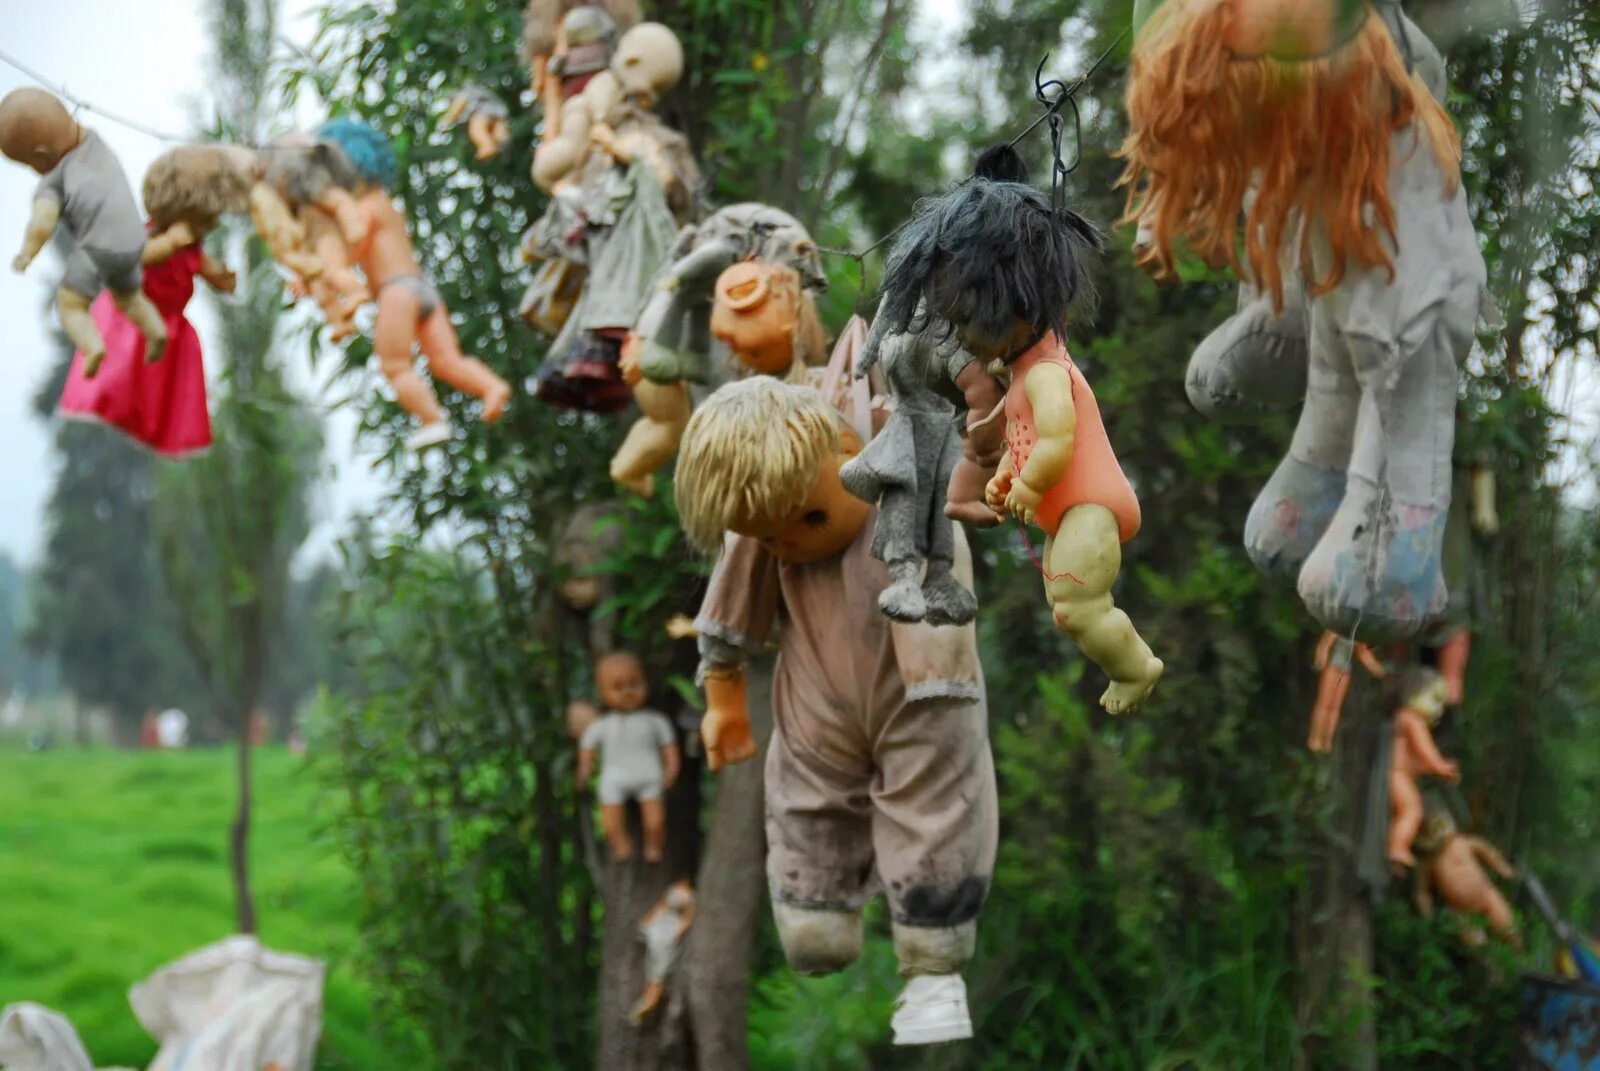 Остров кукол (Island of the Dolls), Мексика. Остров мертвых кукол в Мексике. Остров мёртвых кукол в Мехико.